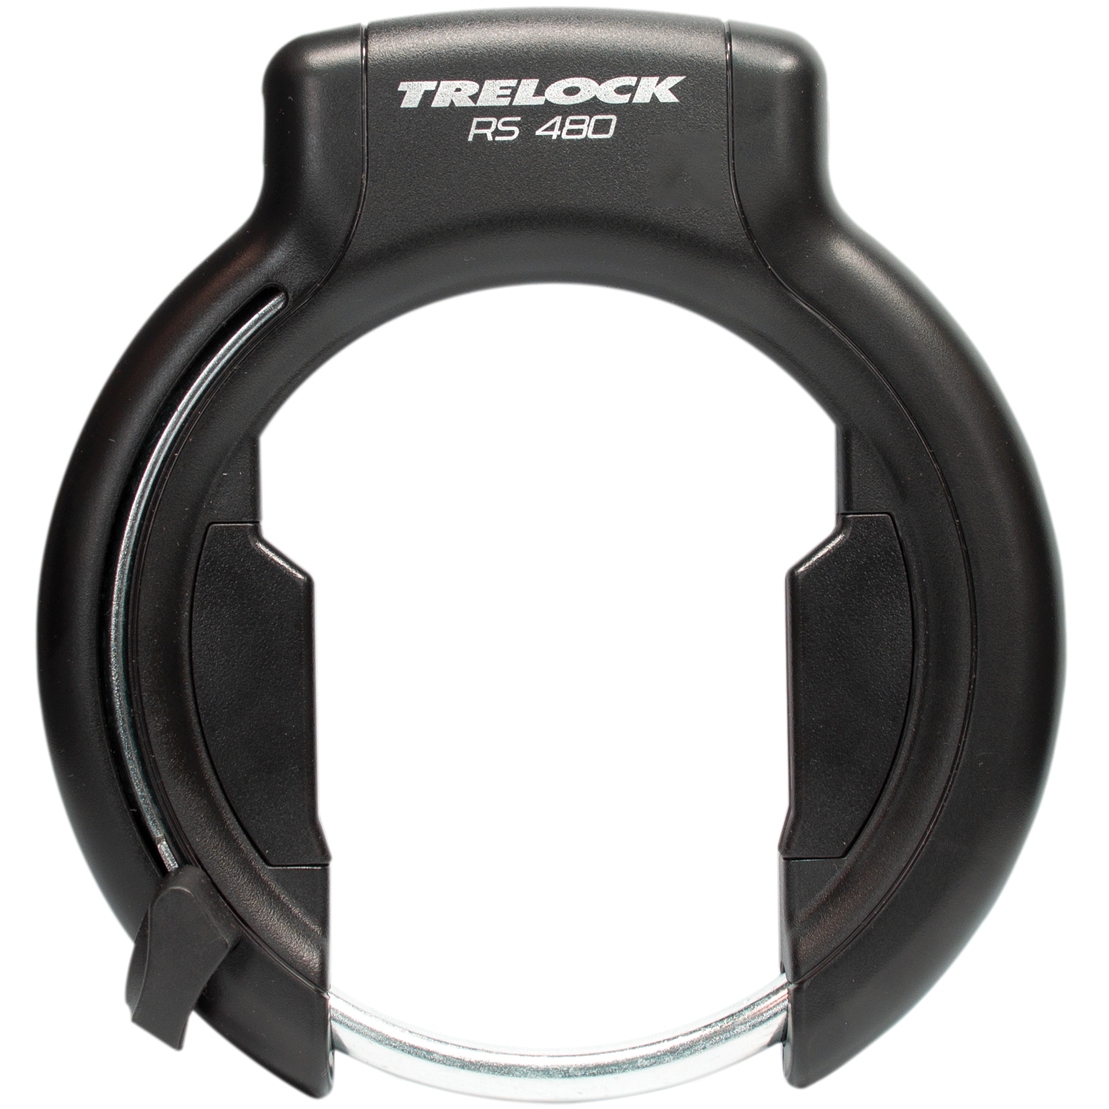 Produktbild von Trelock RS 480 P-O-C XL AZ Rahmenschloss